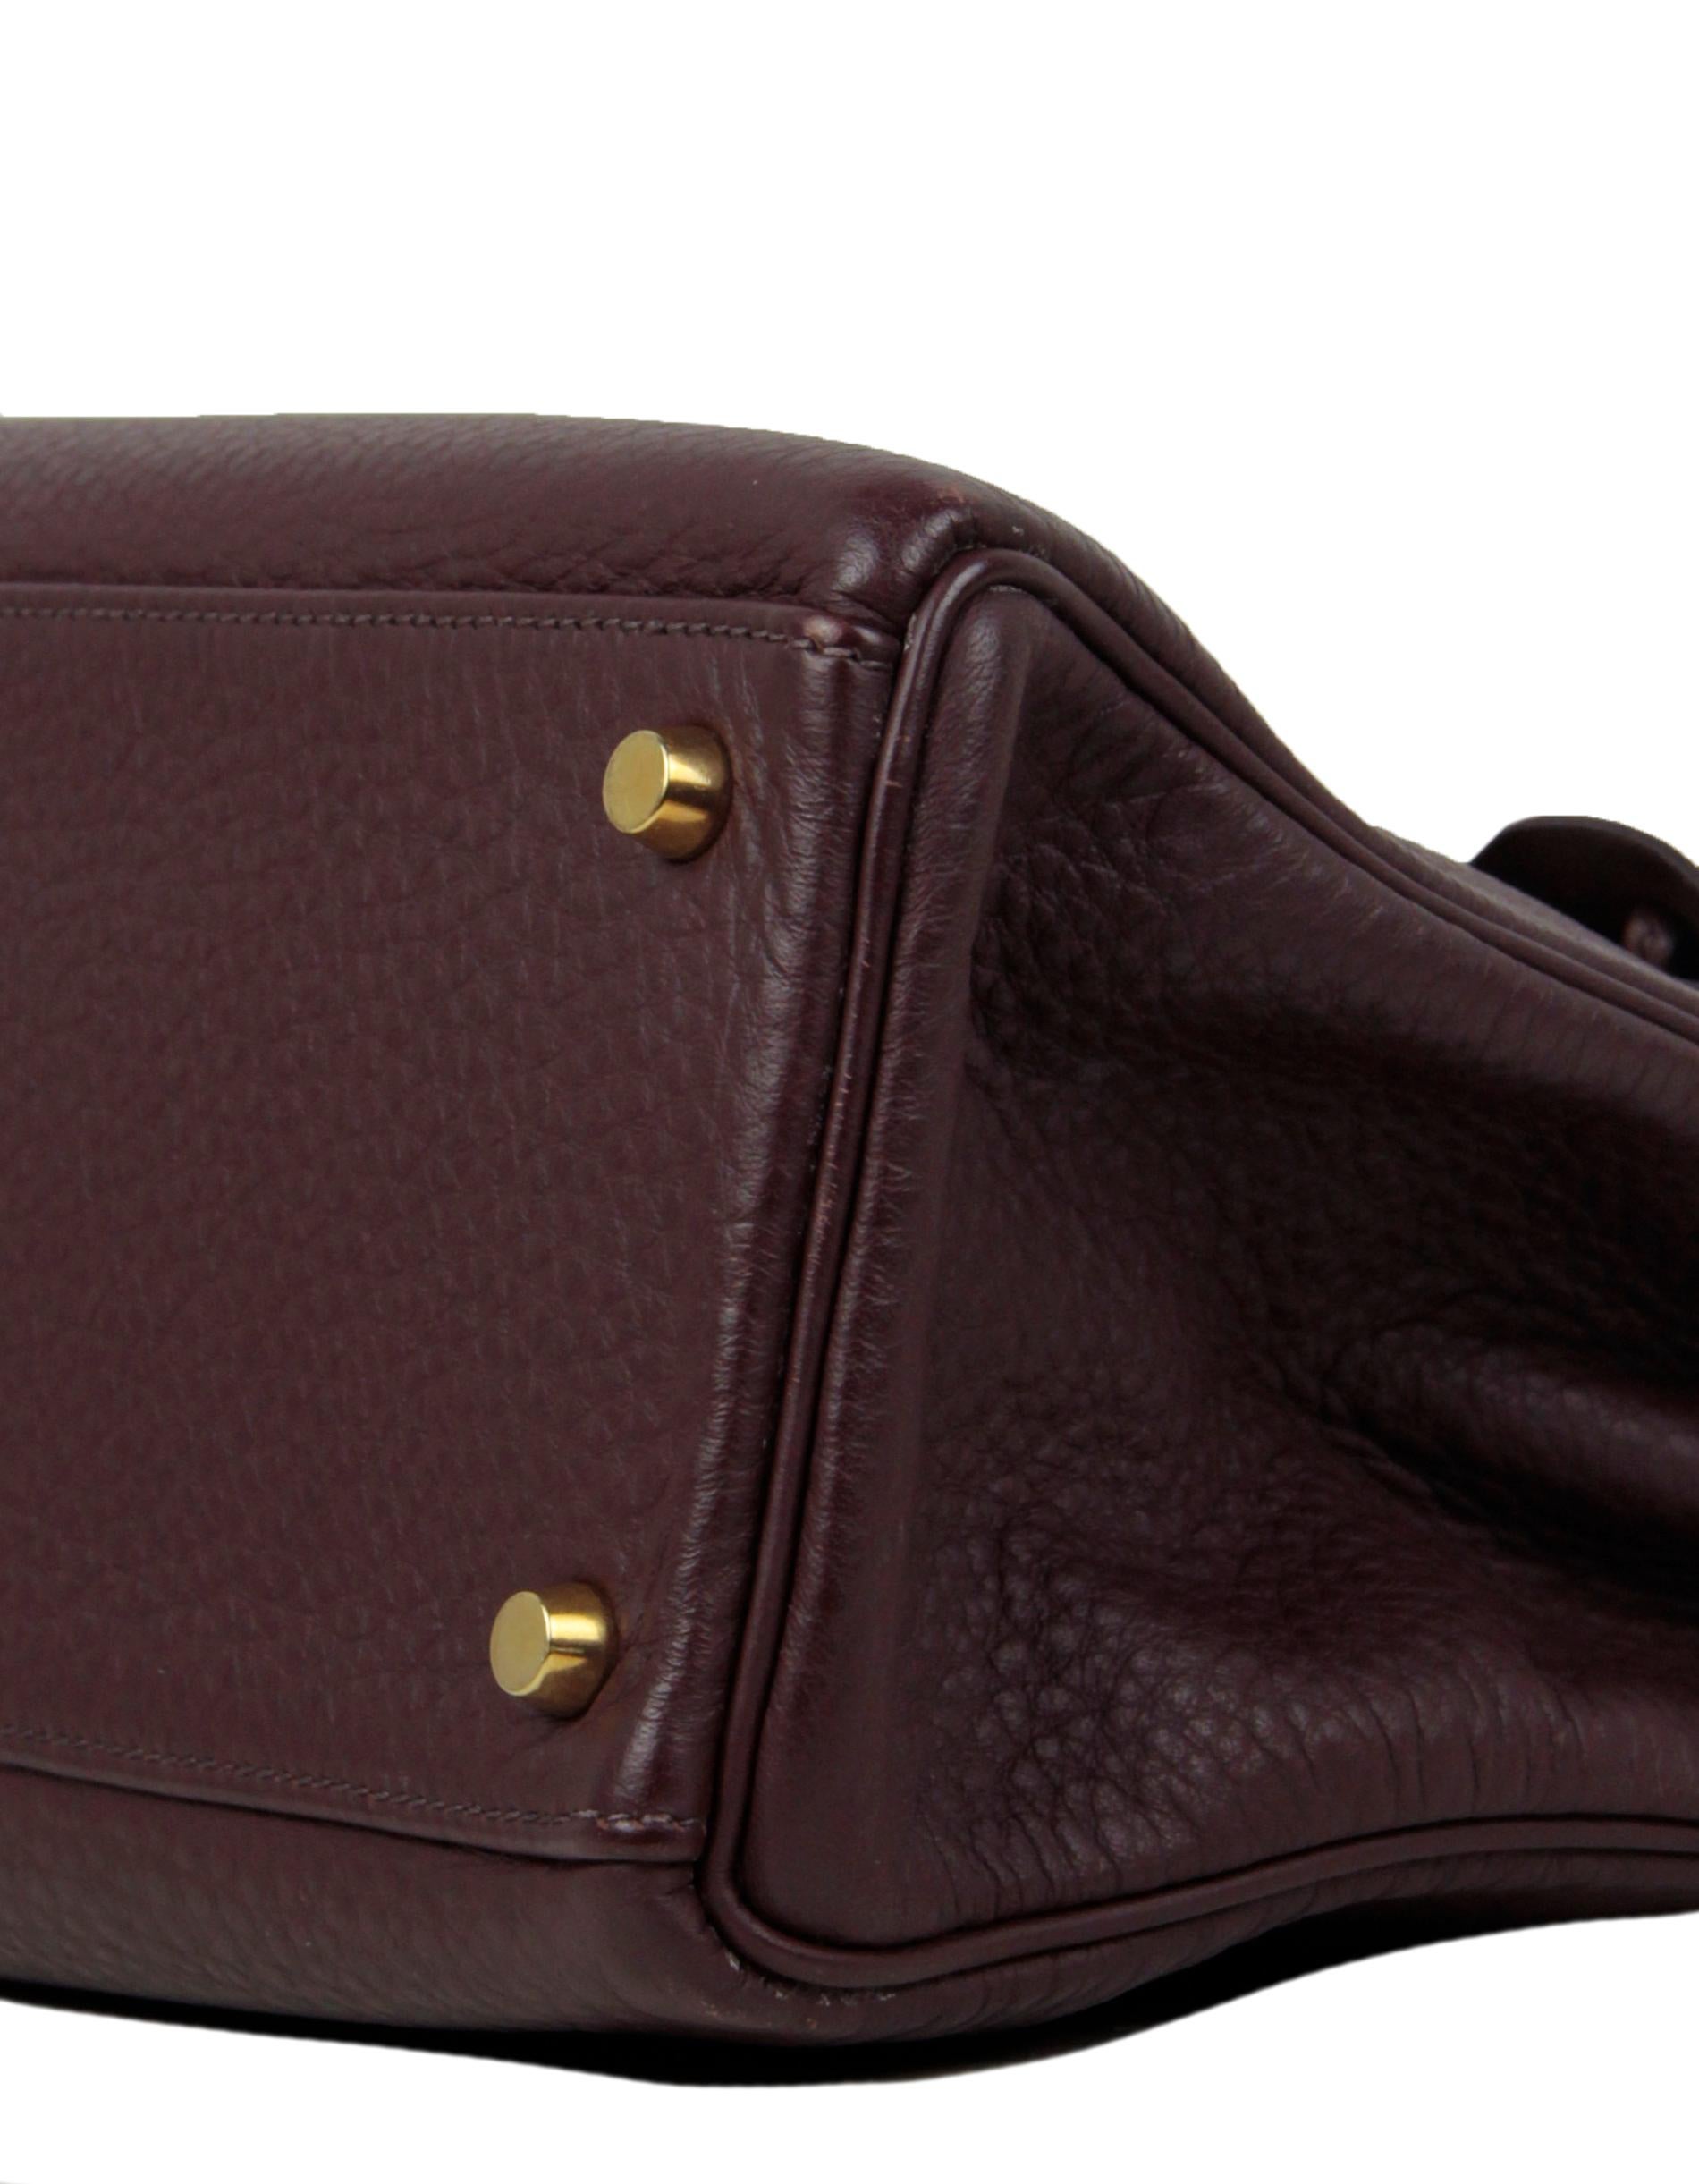 Noir Sac Kelly Hermès en cuir marron Clemence retourné 32 cm en vente